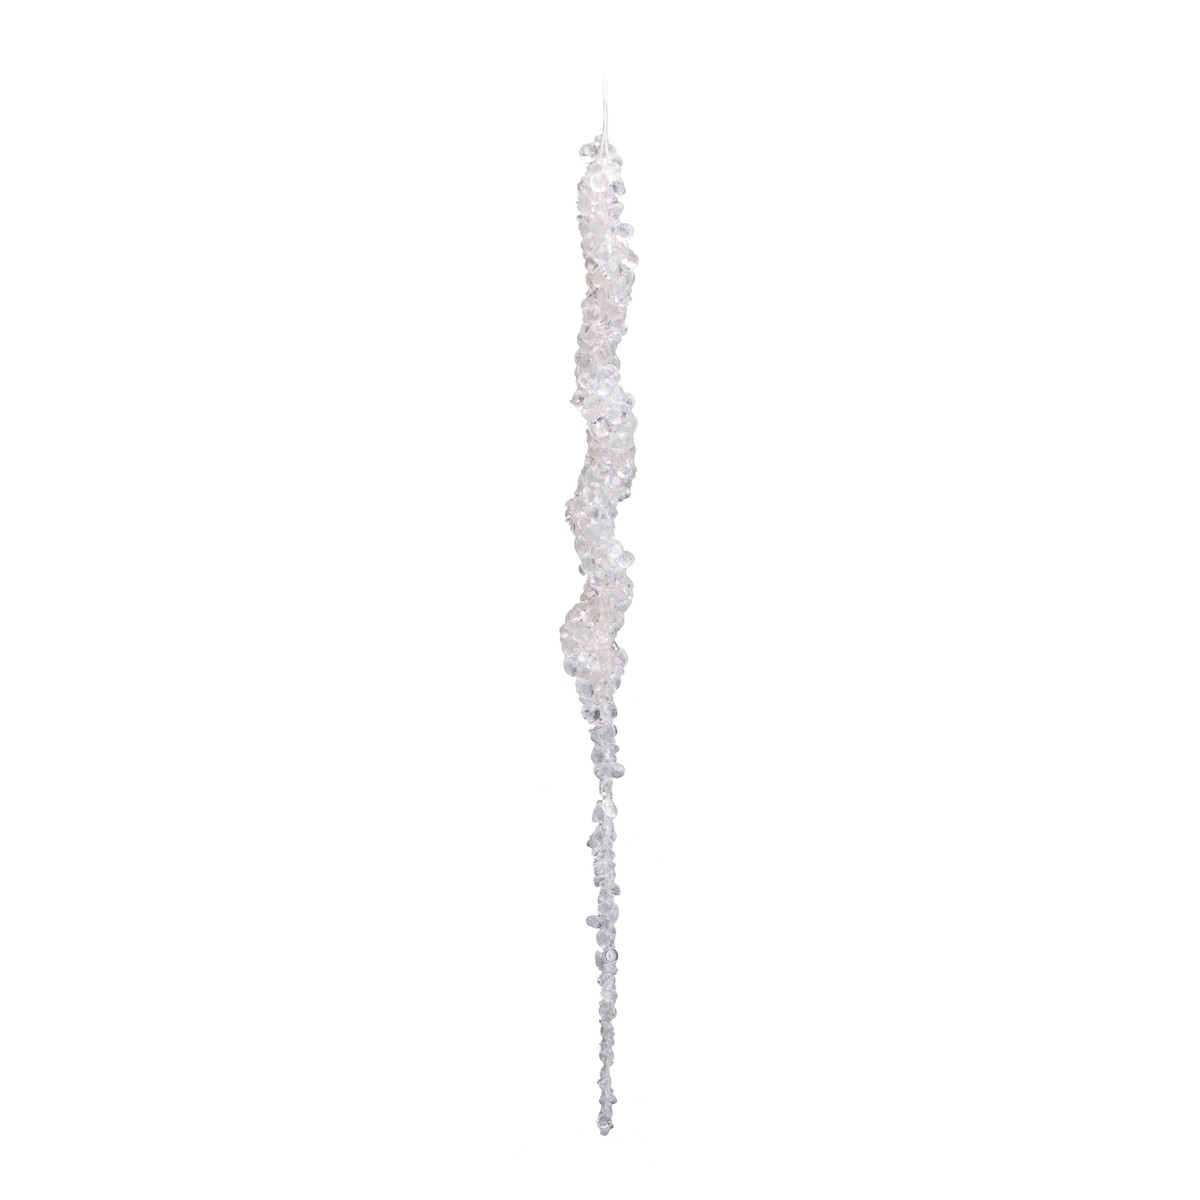   Glaçon à suspendre Blanc neige 46cm